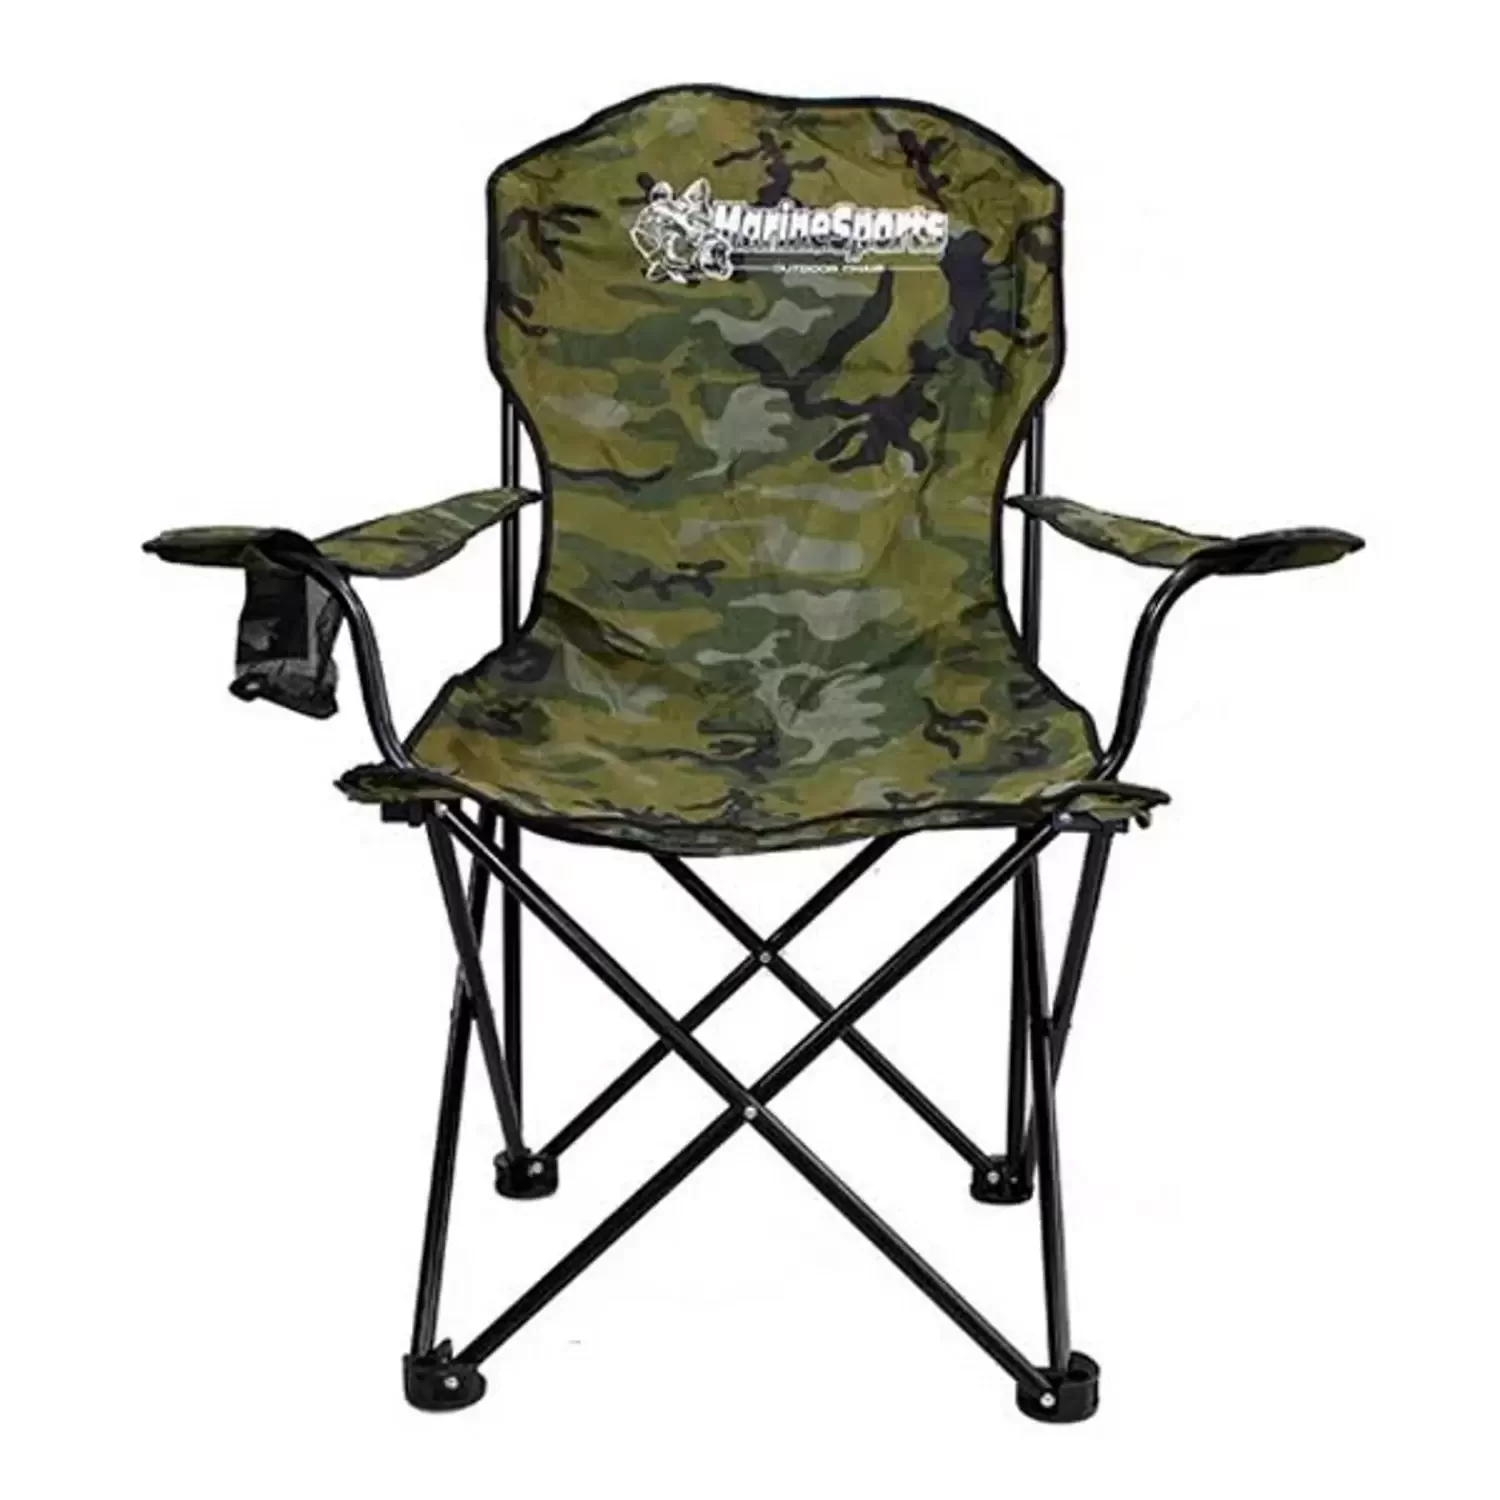 Cadeira dobravel de pesca camping com braço